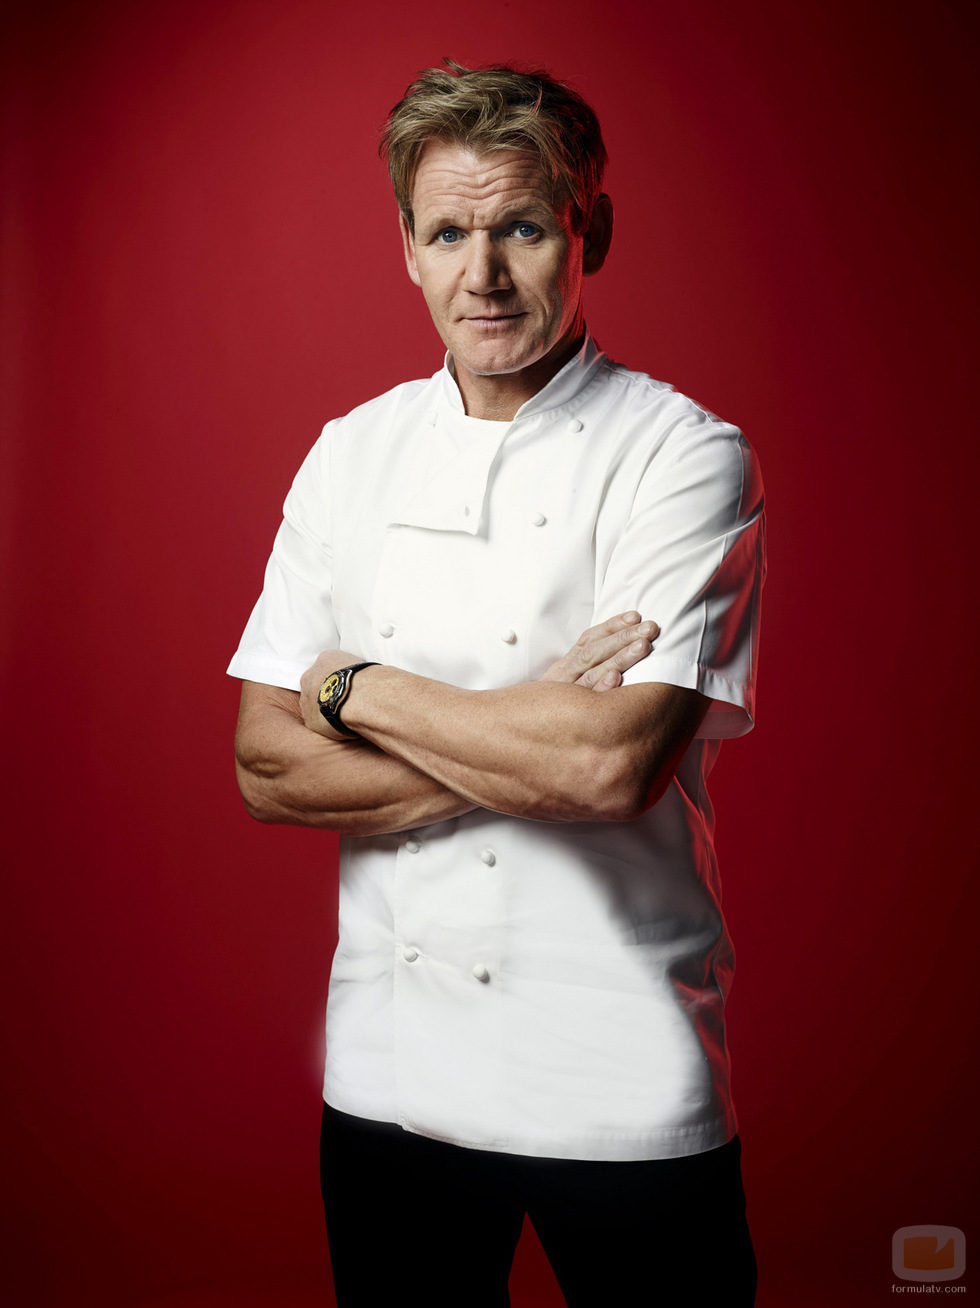 Imagen promocional del chef Gordon Ramsay